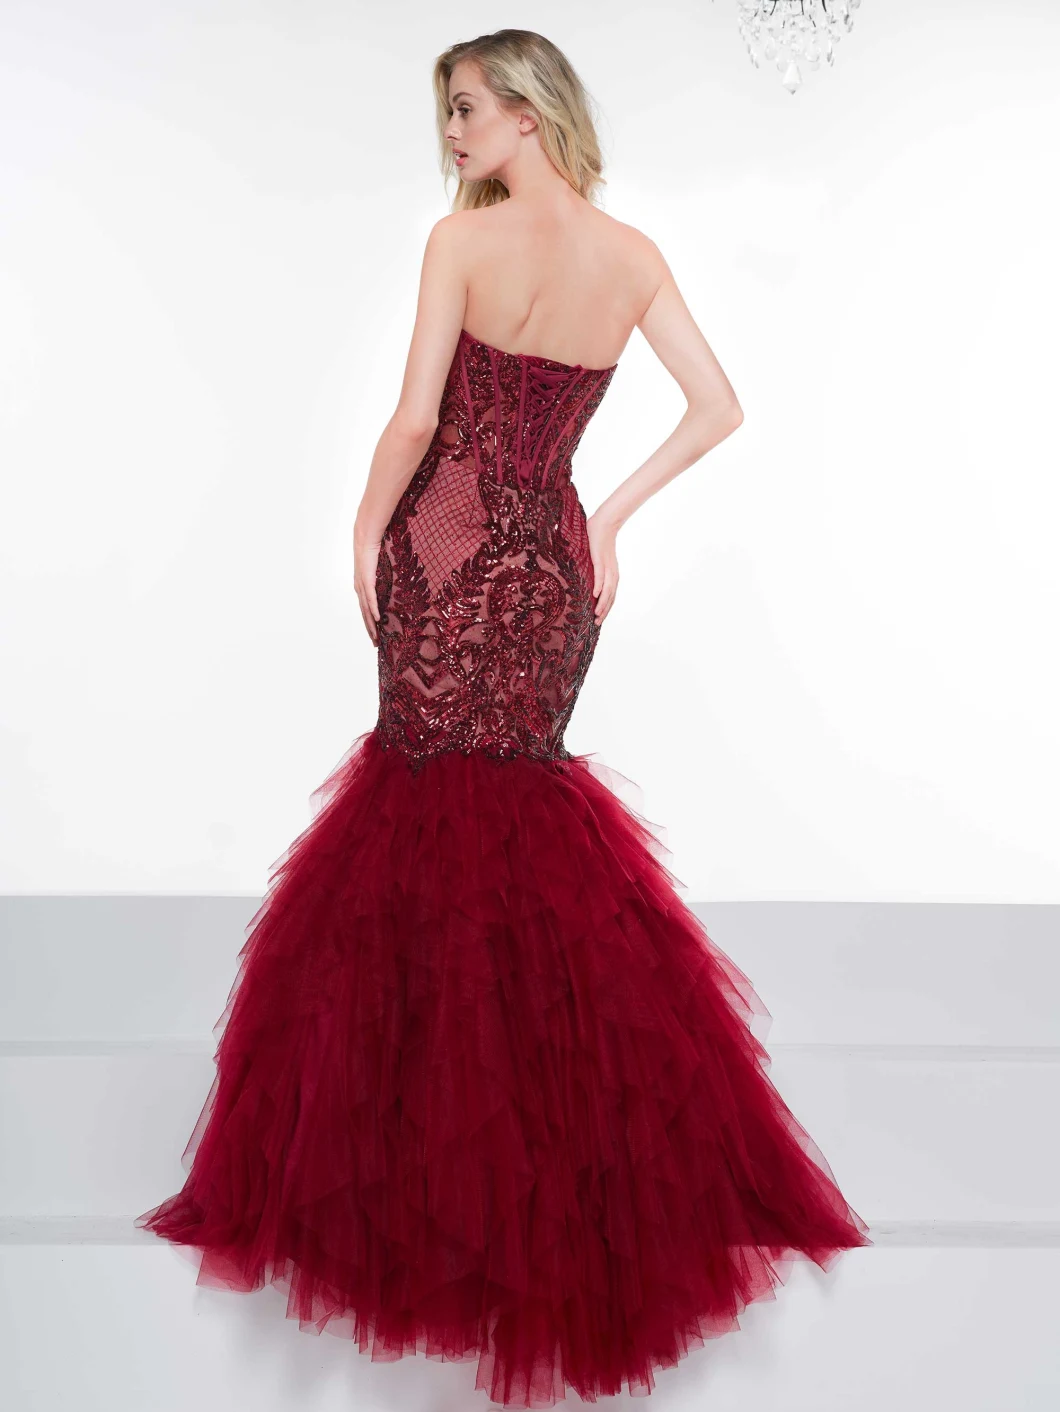 Fashion Lace Bodice Bridal Prom Dress Burgundy Tull Mermaid Lace Beading Evening Dress